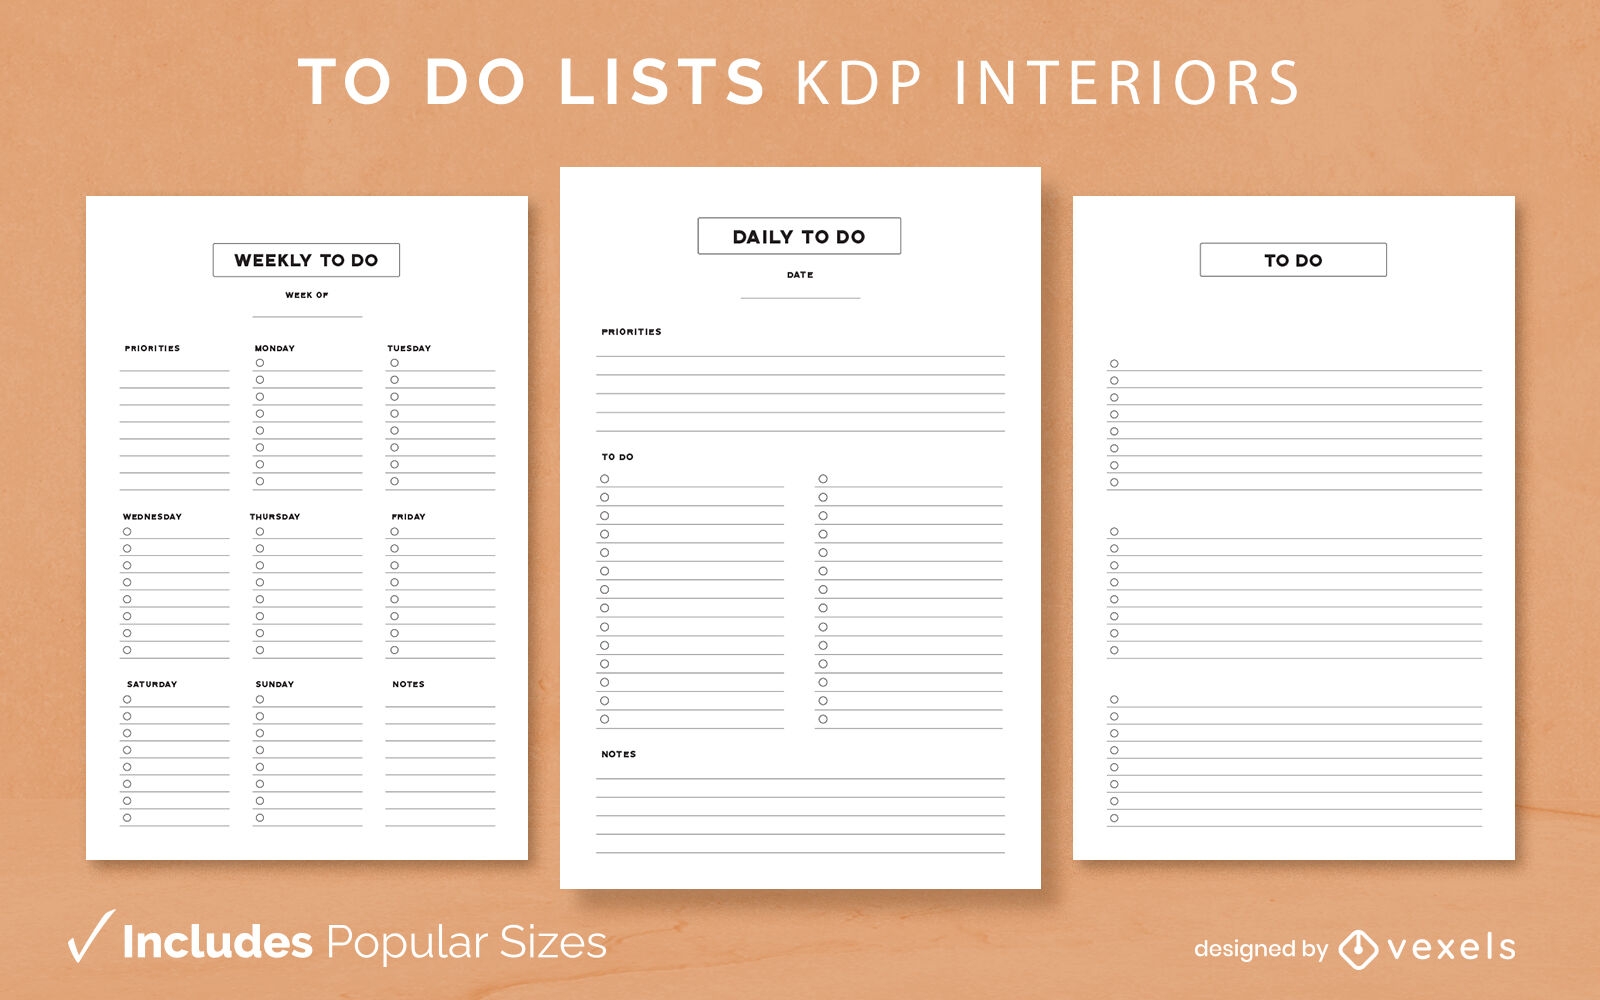 To Do lists kdp interior design